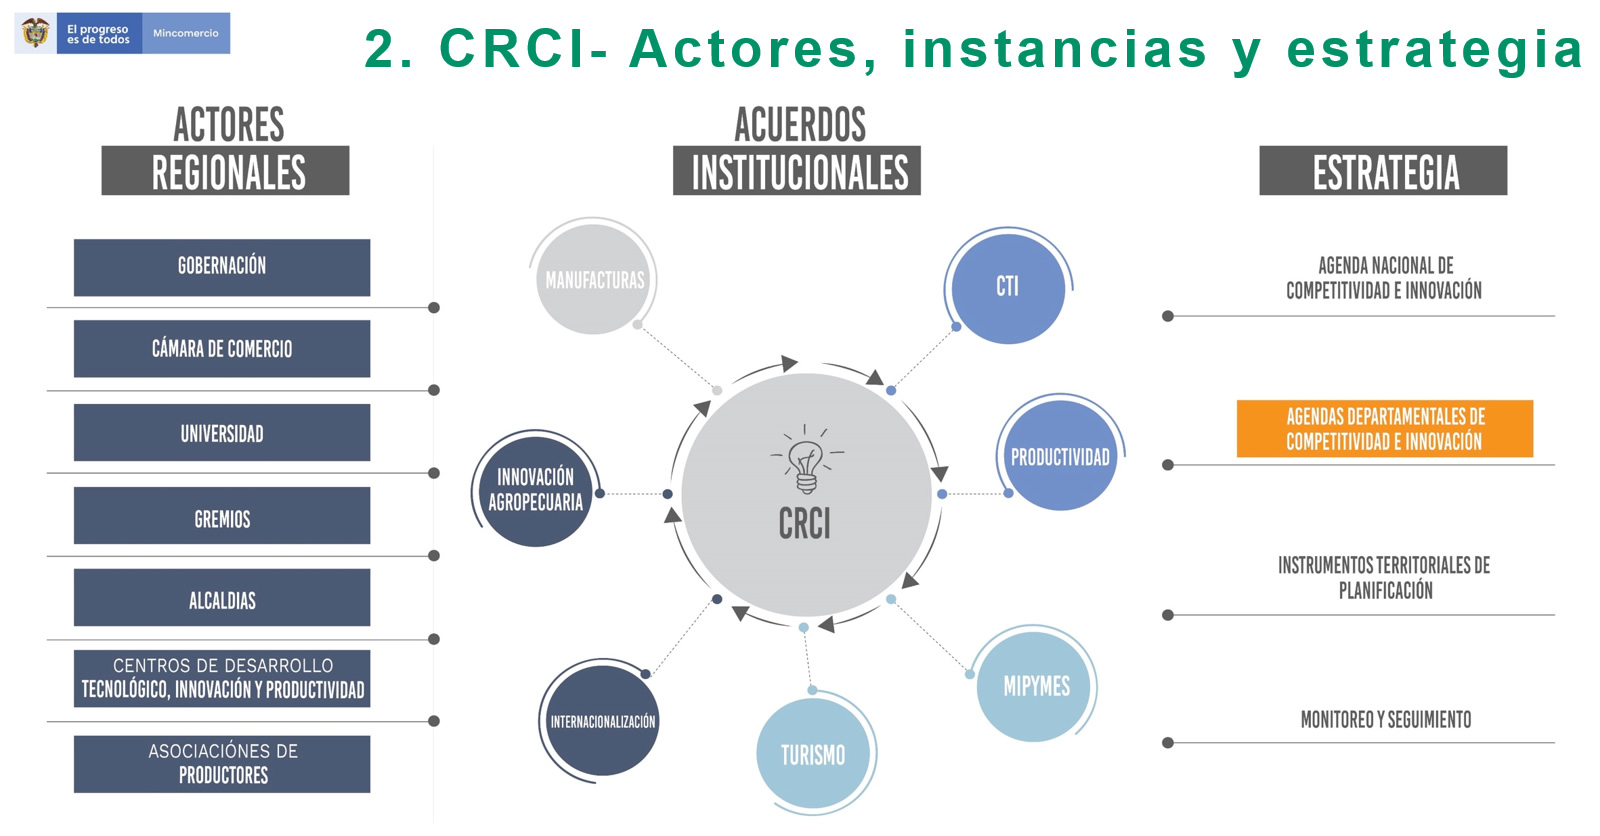 CRCI - Actores, instancias y estrategias